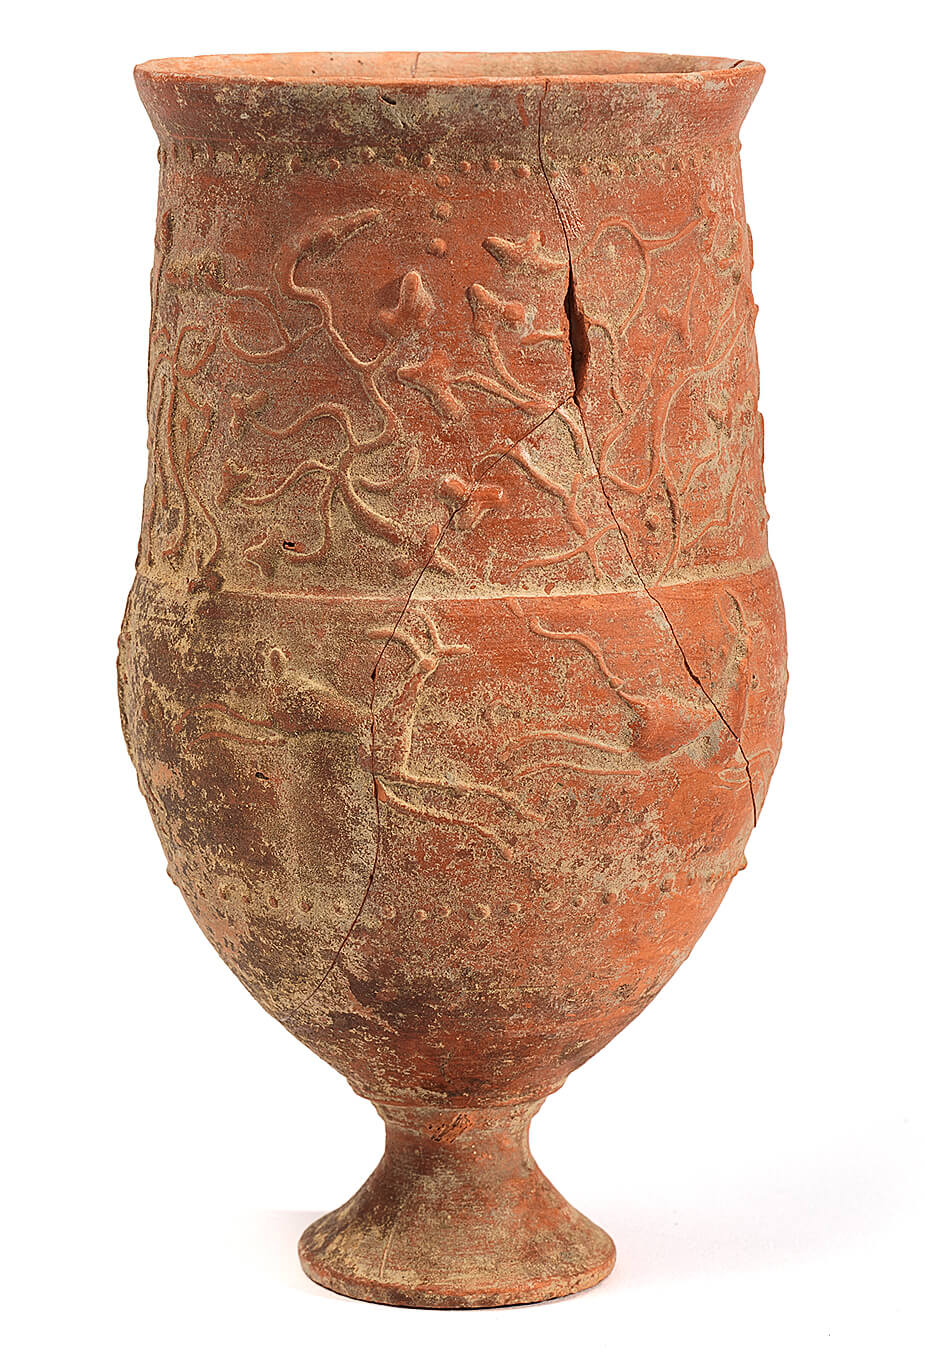 Römischer Kelch mit Standfuss, Ende des 1. Jh. bis Mitte Des 2. Jh. n. Chr., © Peter und Birgit Kainz/Wien Museum 